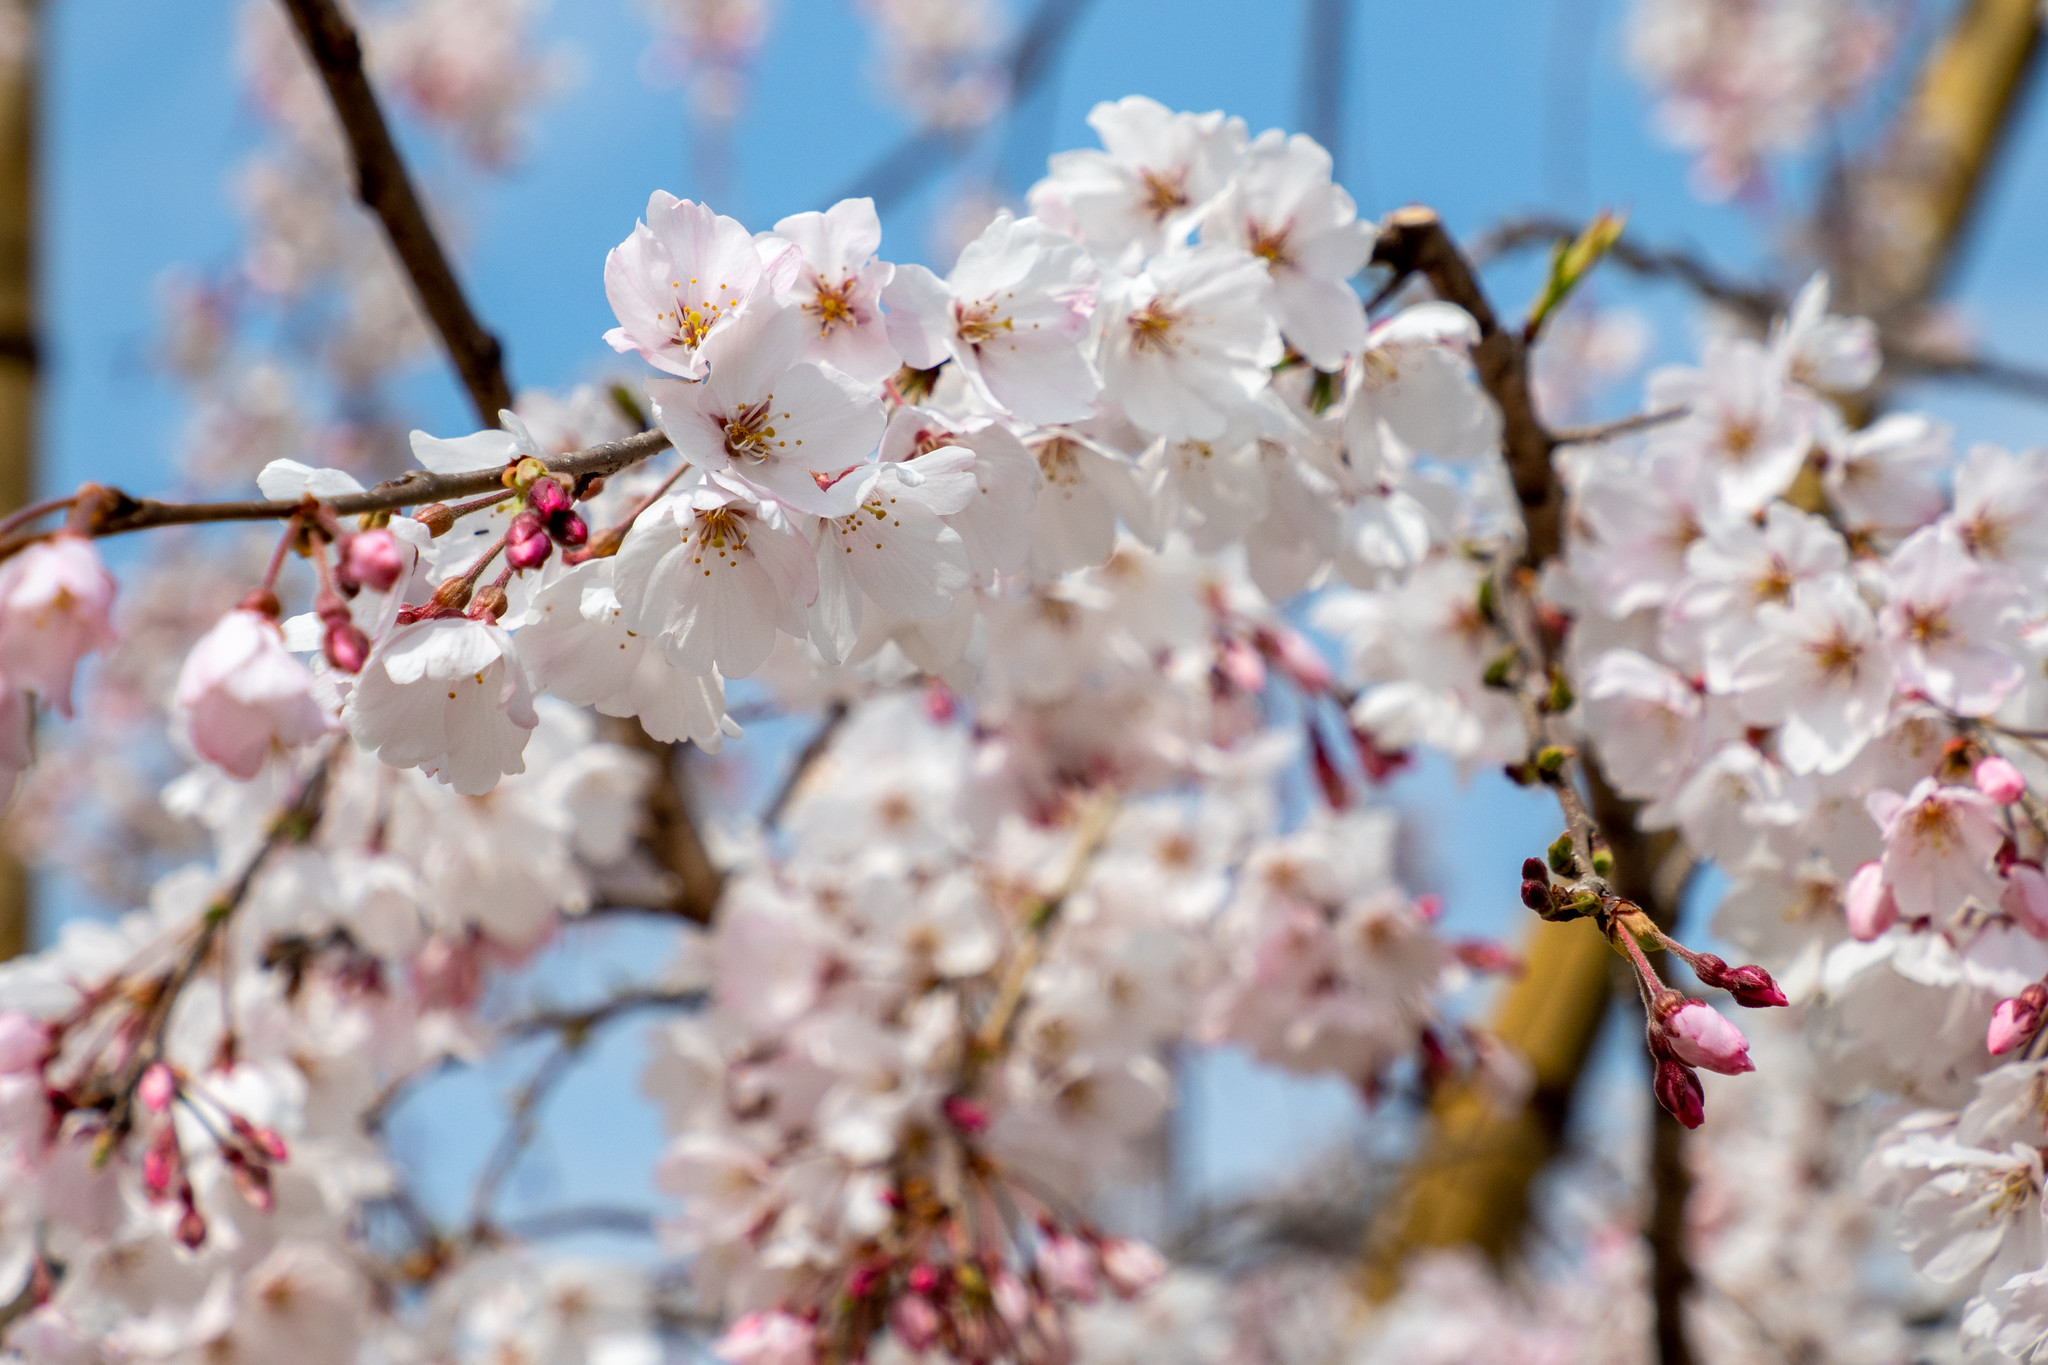 錦糸公園の桜 ソメイヨシノはまだだけど枝垂れ桜が見頃